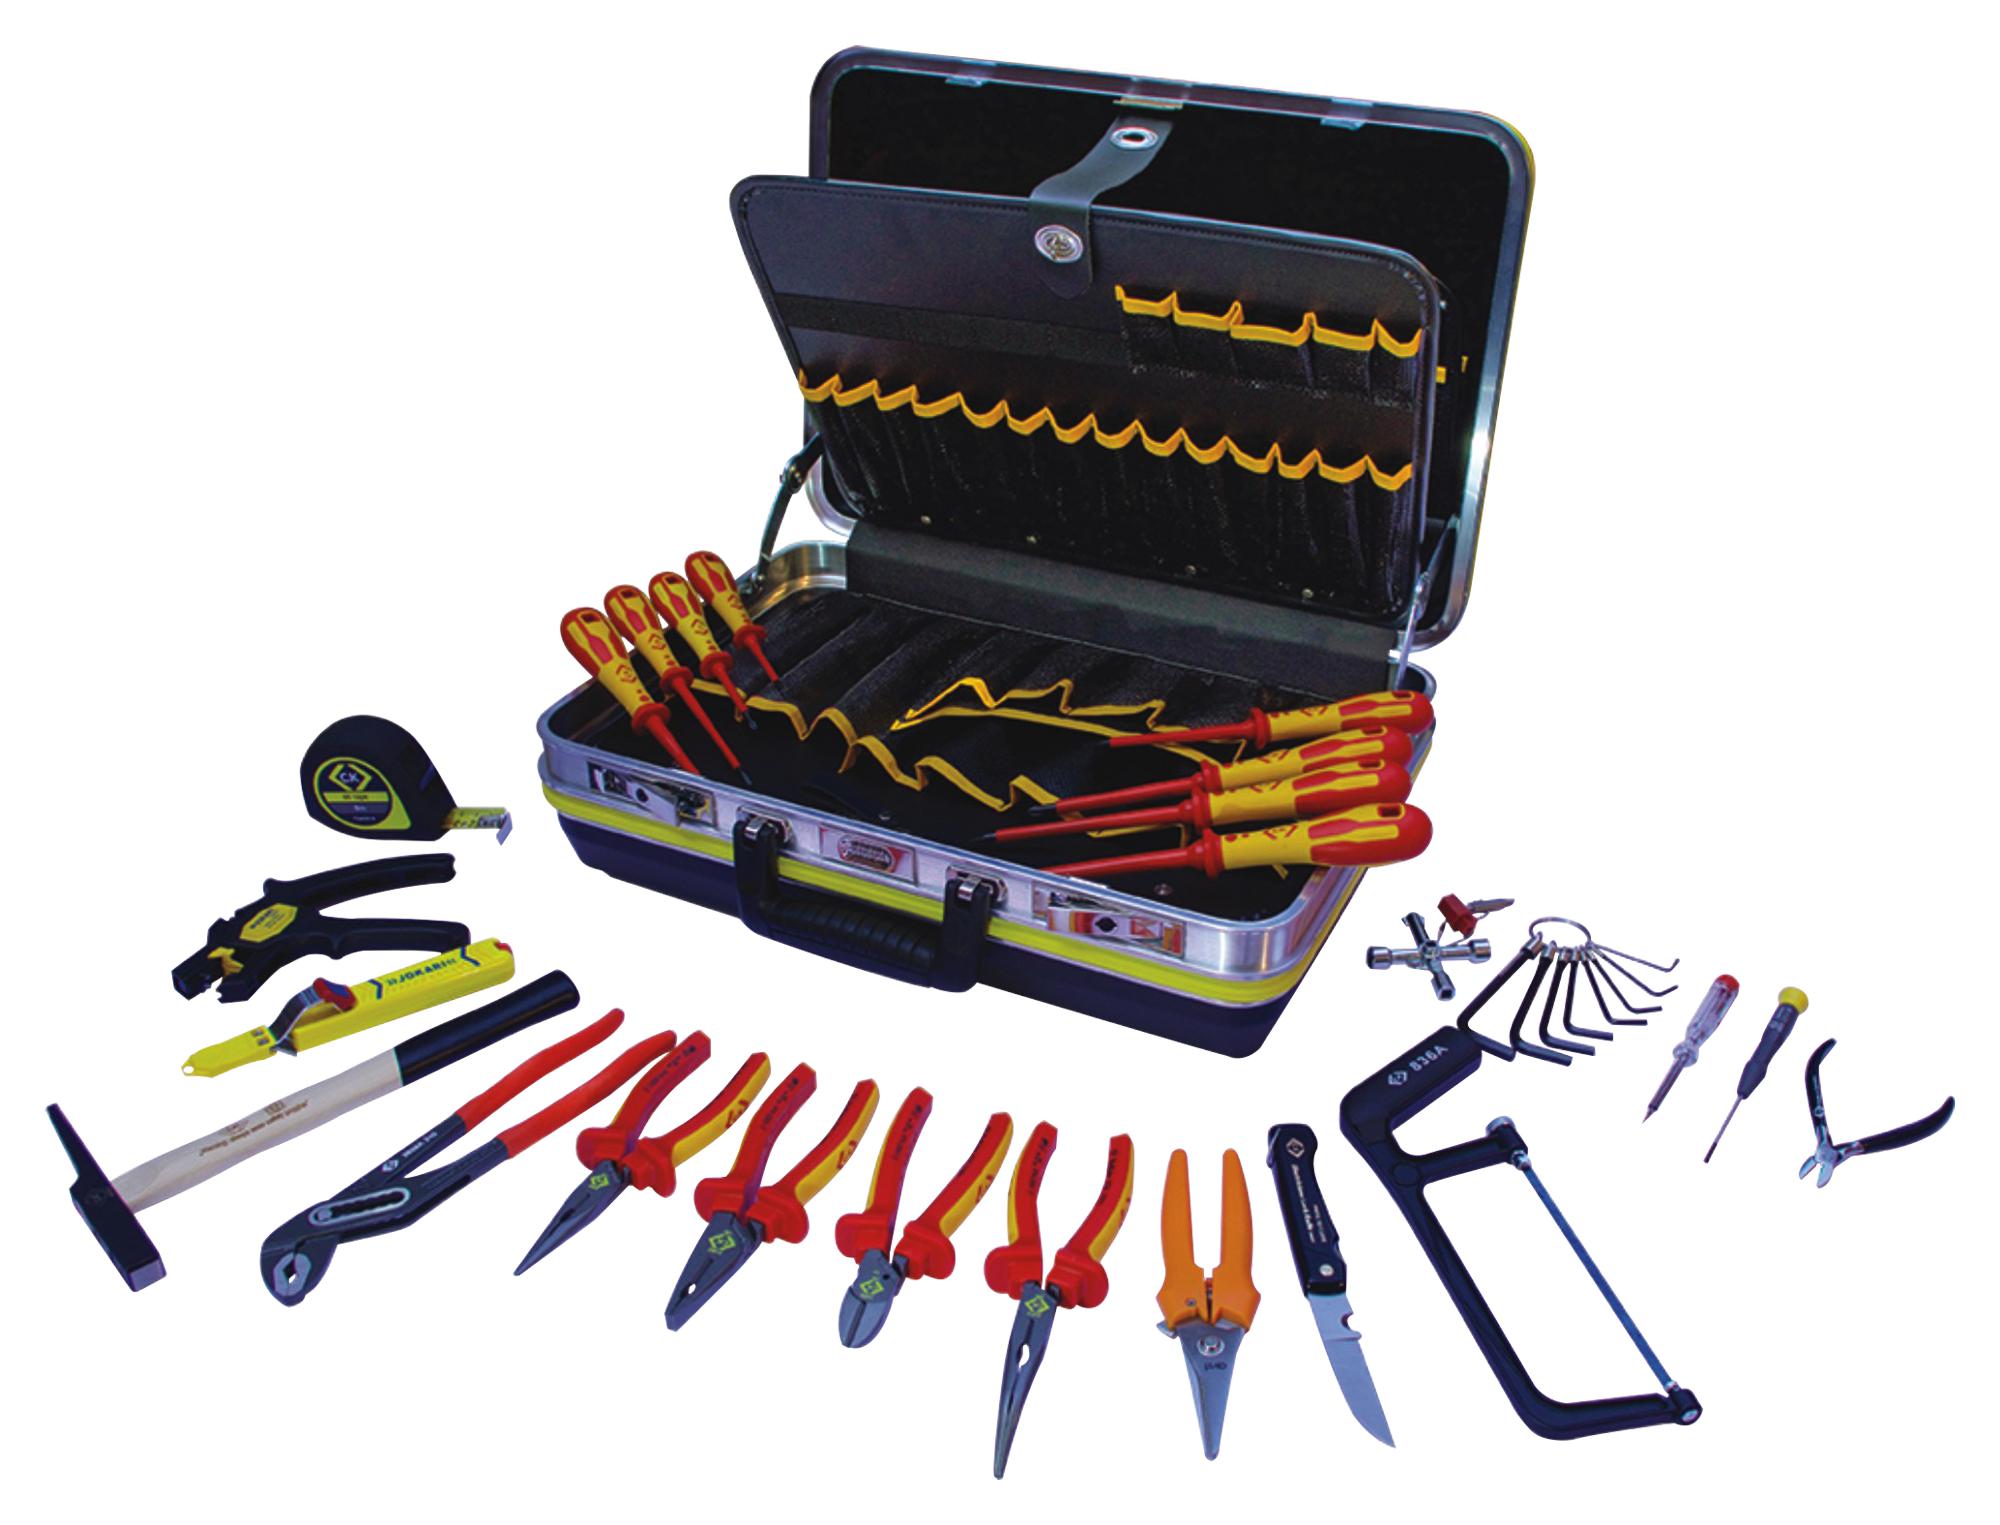 C tools. Набор инструмента Wilton 999500. Wilton набор инструментов. Lux Tools набор инструментов. Набор инструментов Wilton в кейсе.